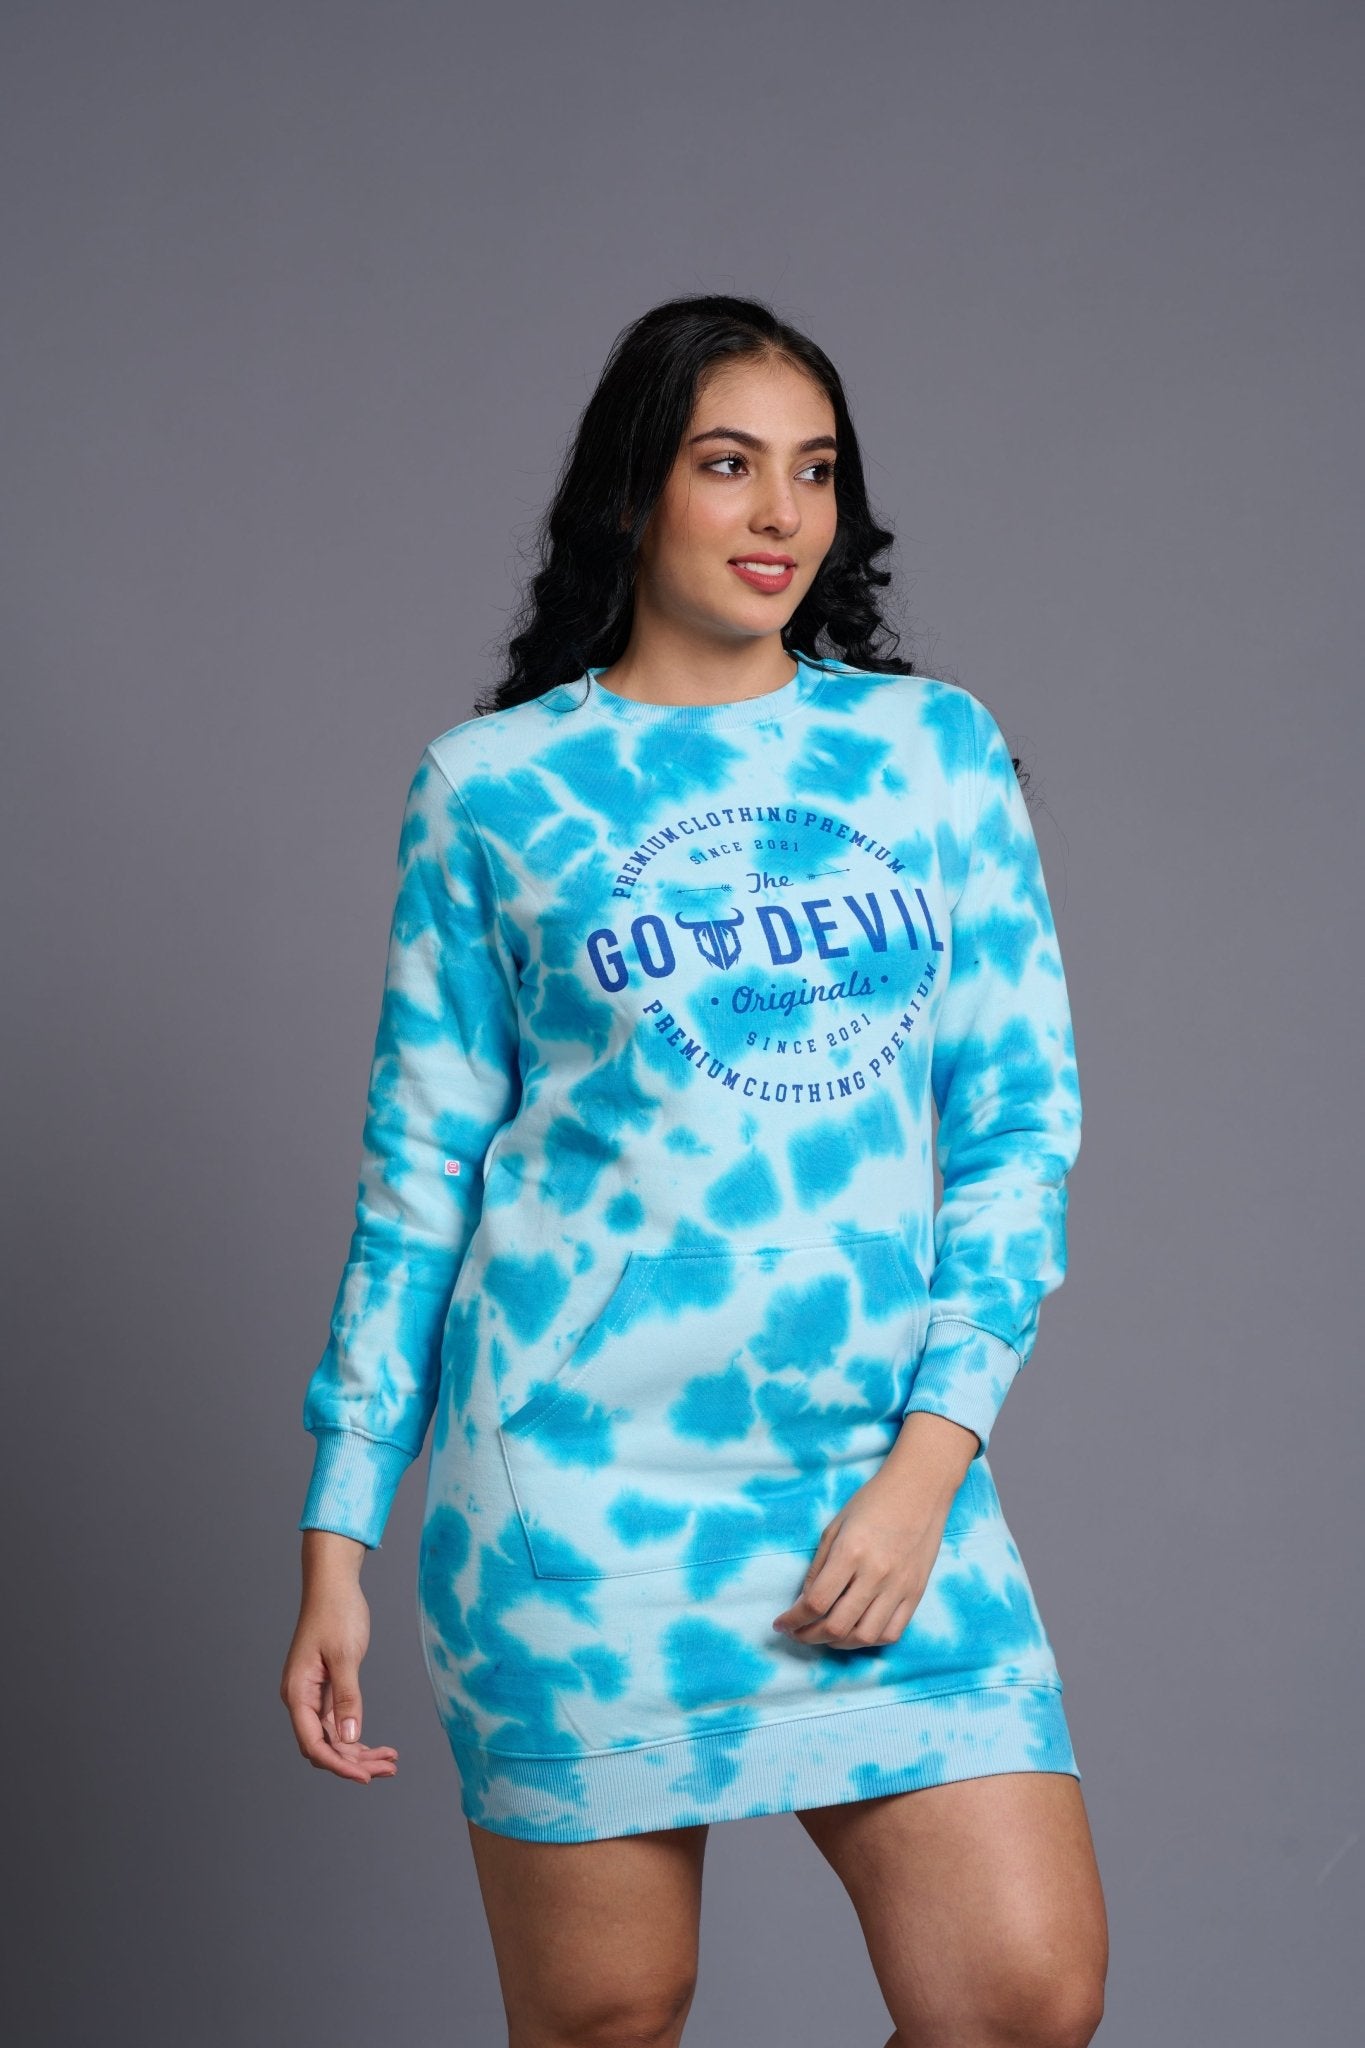 Go Devil Originals Printed Sky Blue Sweatdress for Women - Go Devil